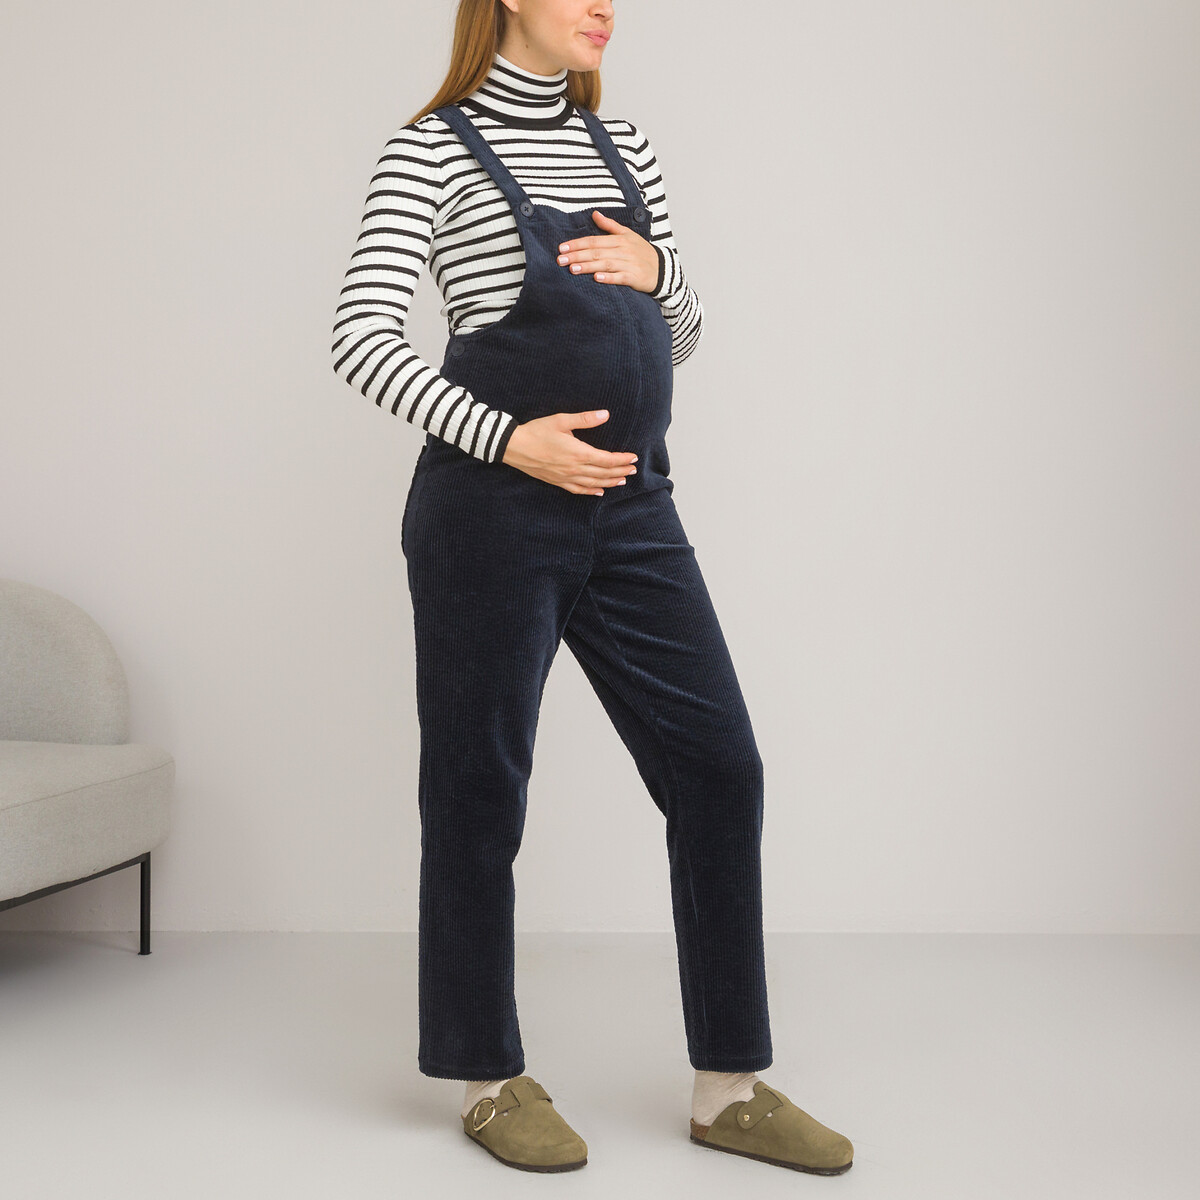 комбинезон для периода беременности из денима 40 fr 46 rus синий Комбинезон для периода беременности из вельвета 38 (FR) - 44 (RUS) синий